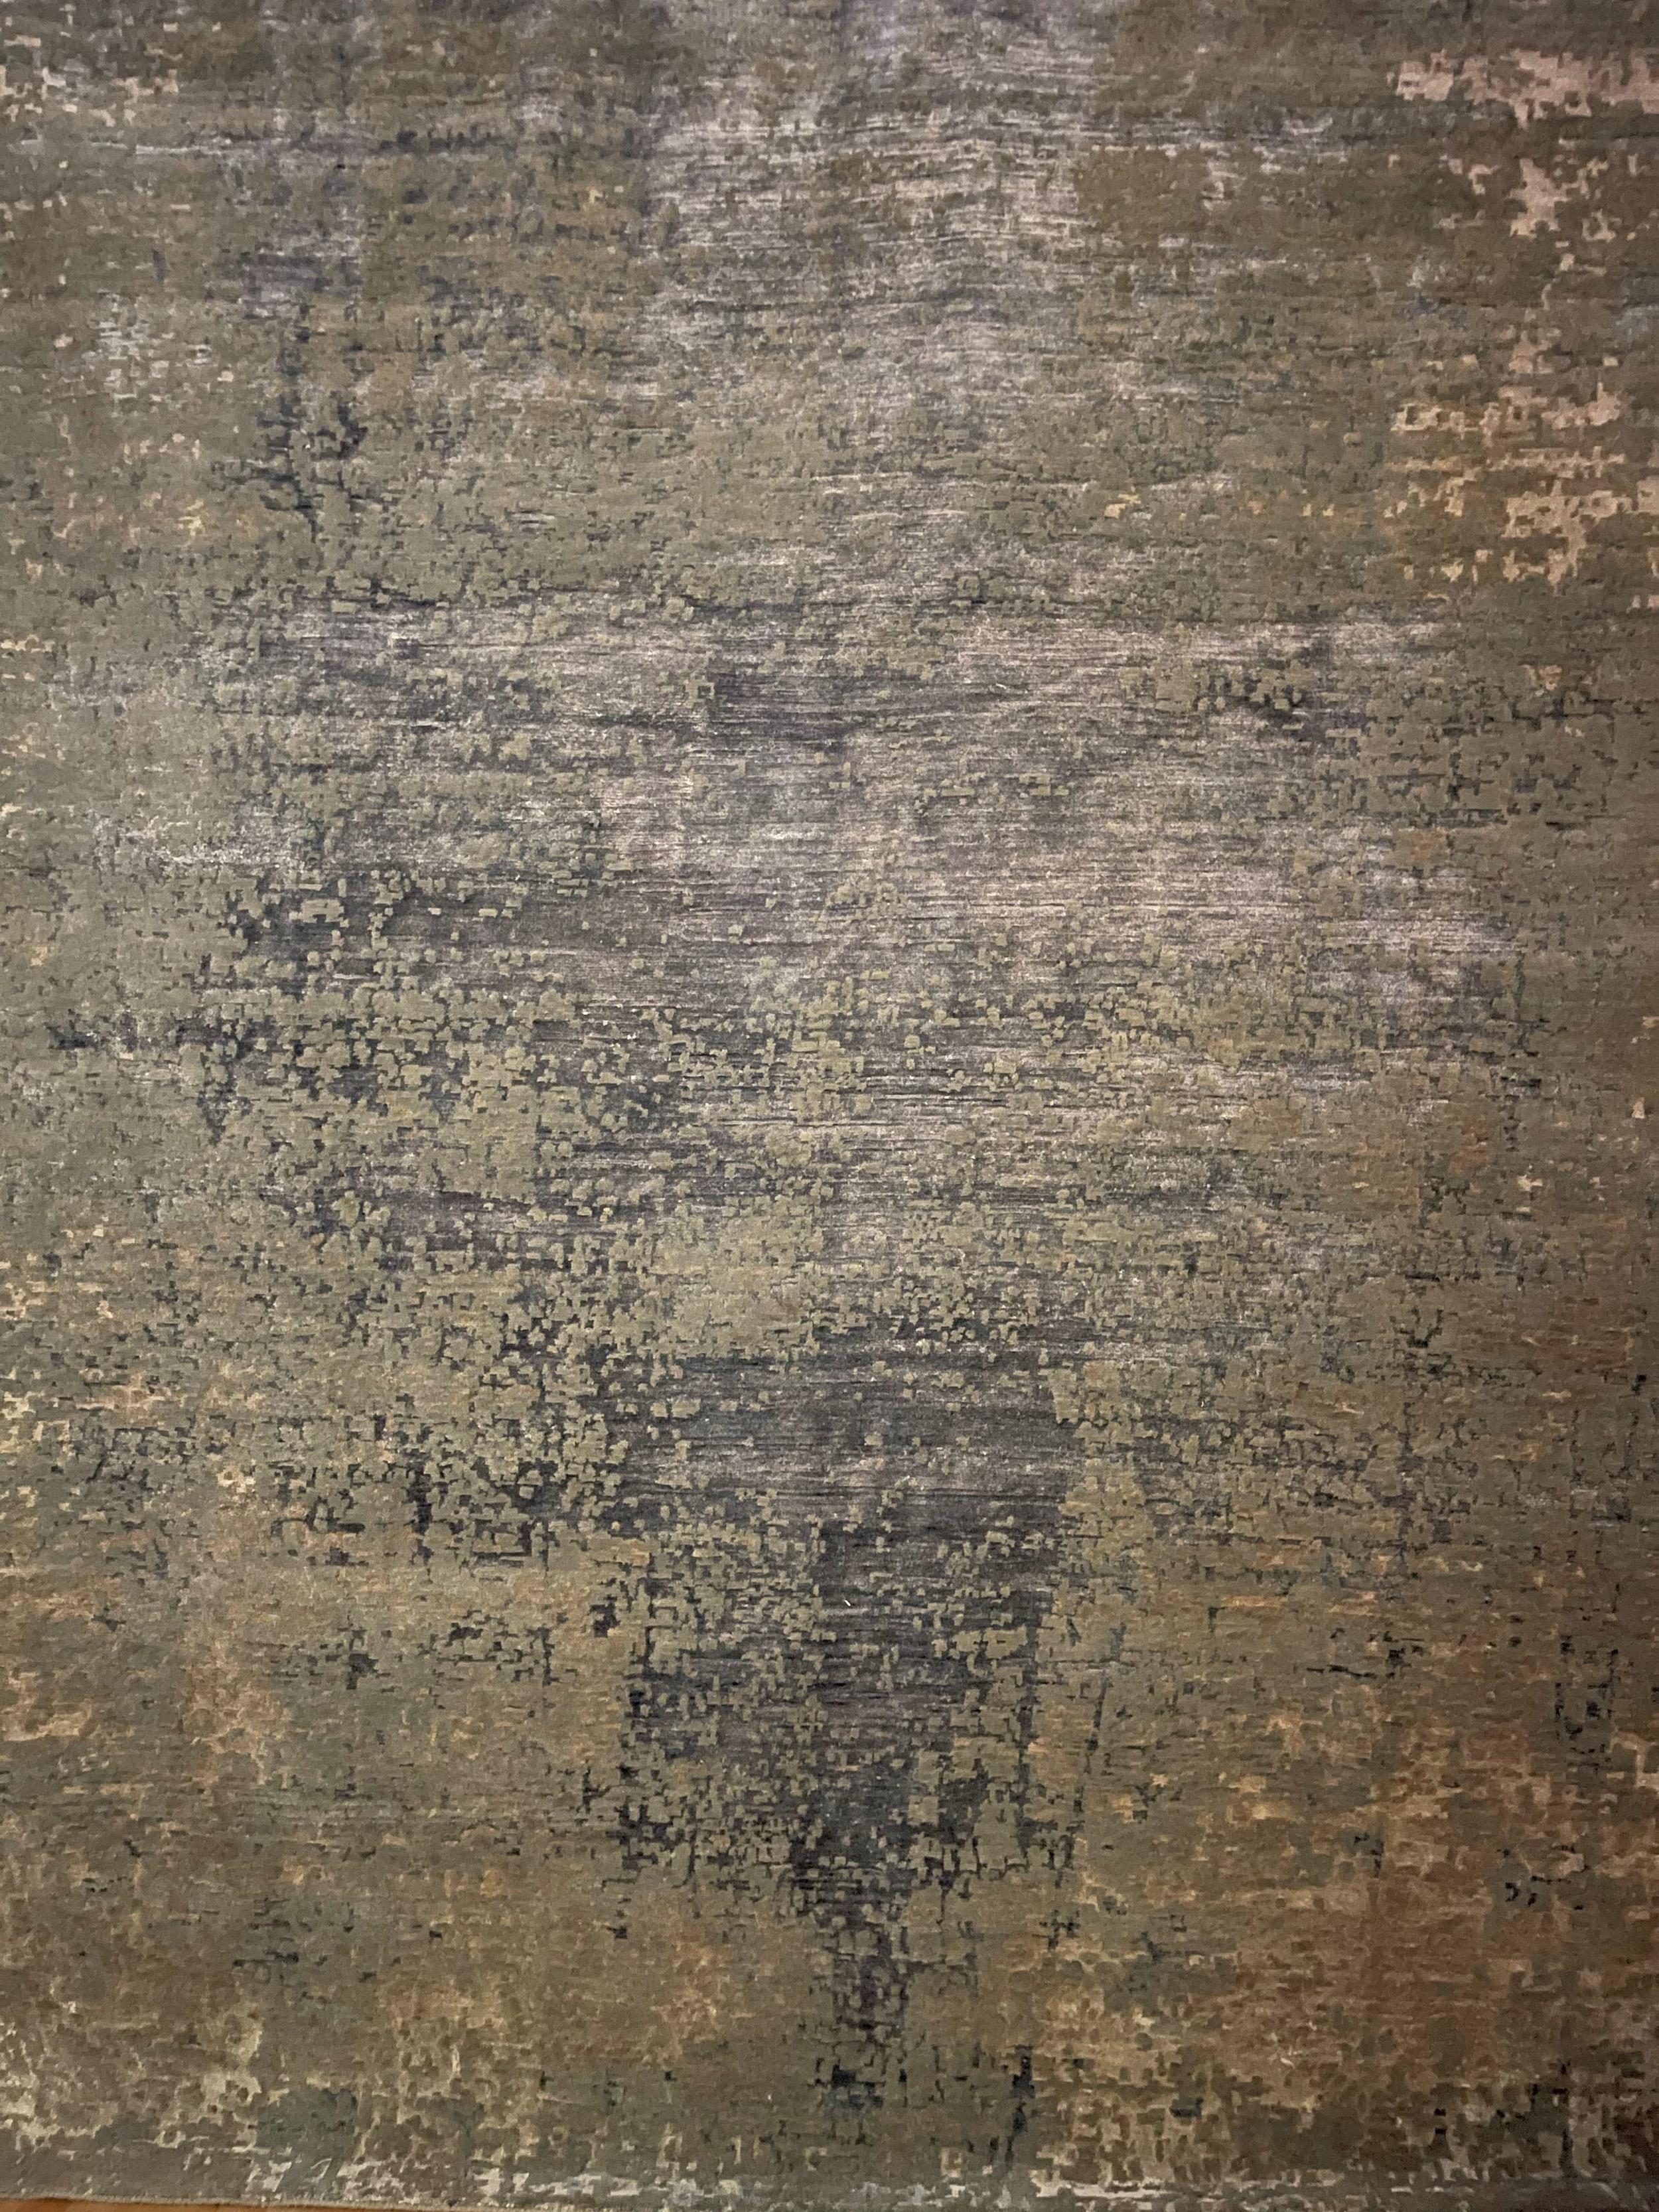 Dieser abstrakte Design Teppich hat die Nr.: DM 357 und ist aus unserer Master-Loom Kollektion. Das Format ist 250cm x 300cm, handgeknüpft und besteht aus einer einzigartigen Mischung aus hochwertiger Wolle und Bambus-Seide, deren natürlicher Glanz